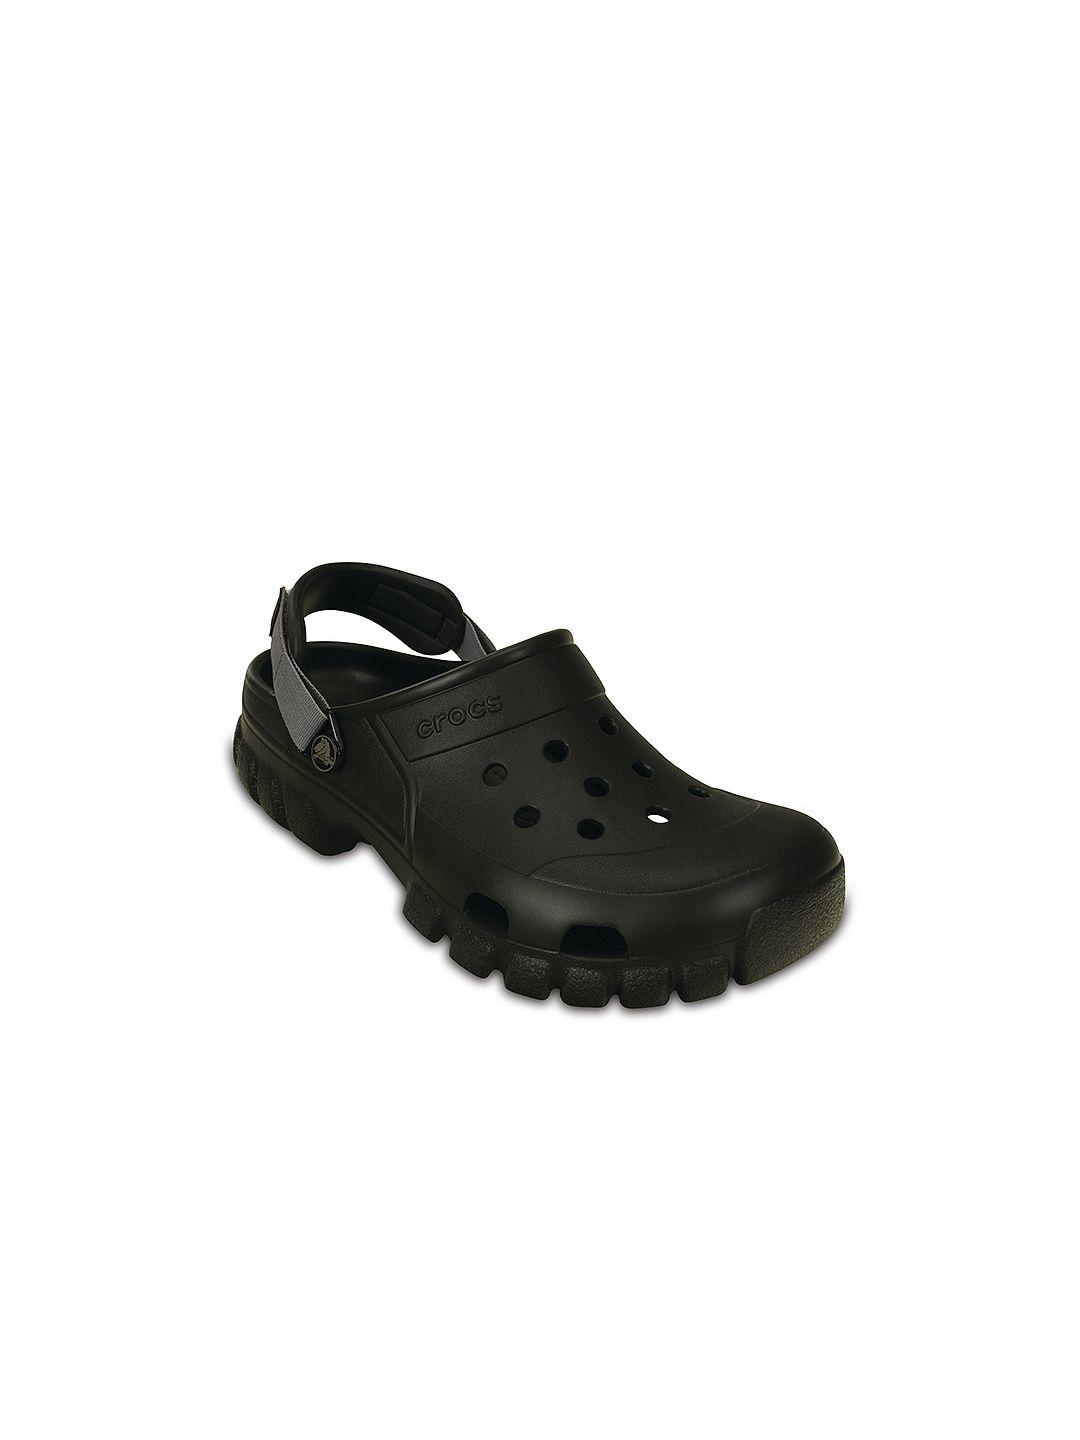 crocs off road  women black clogs